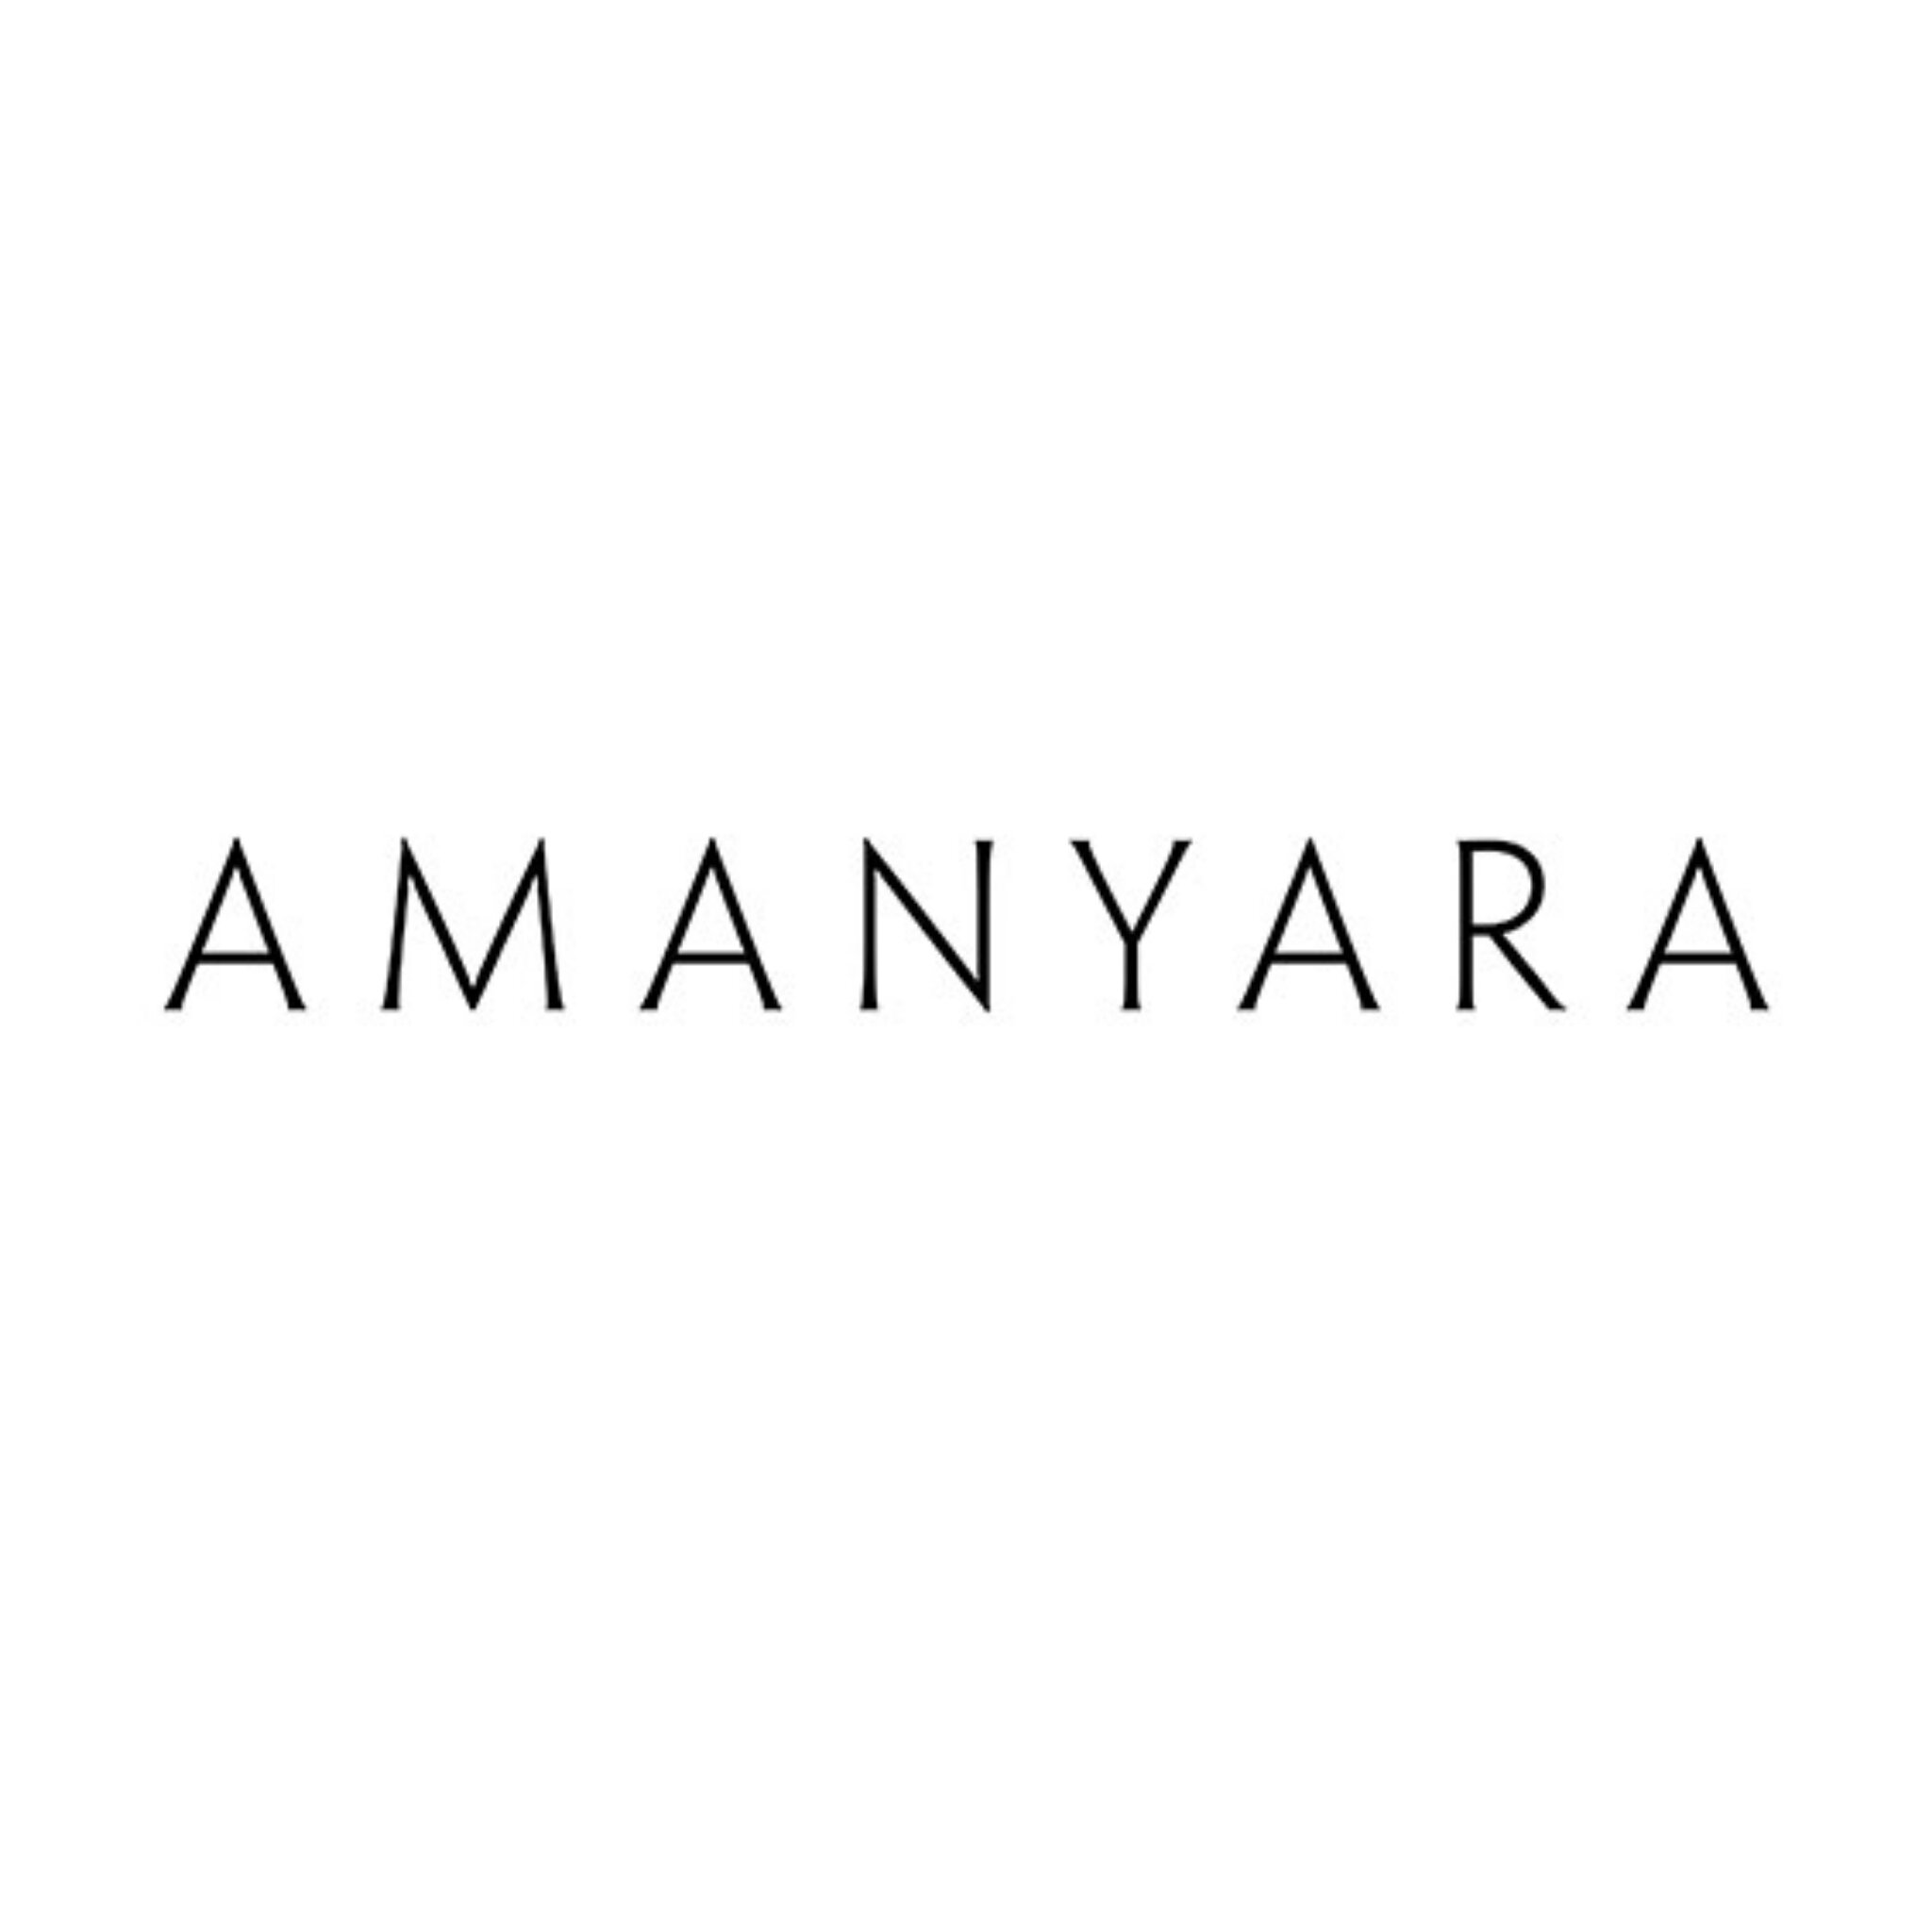 Amanyara.jpg